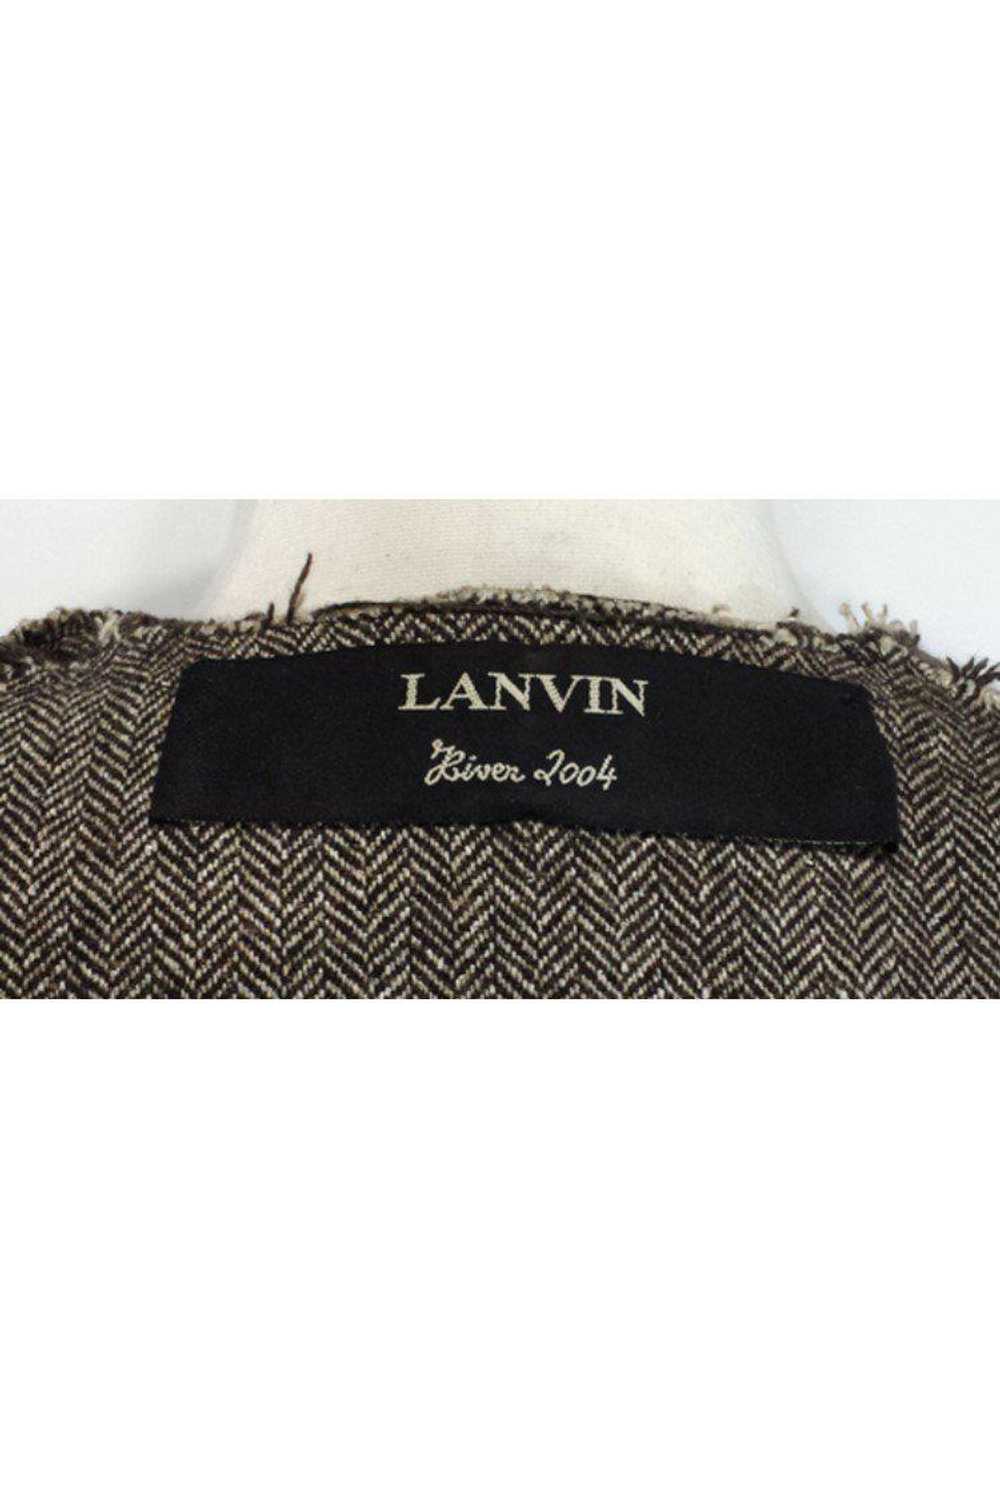 Lanvin - Brown Tone Open Front Jacket Sz M - image 4